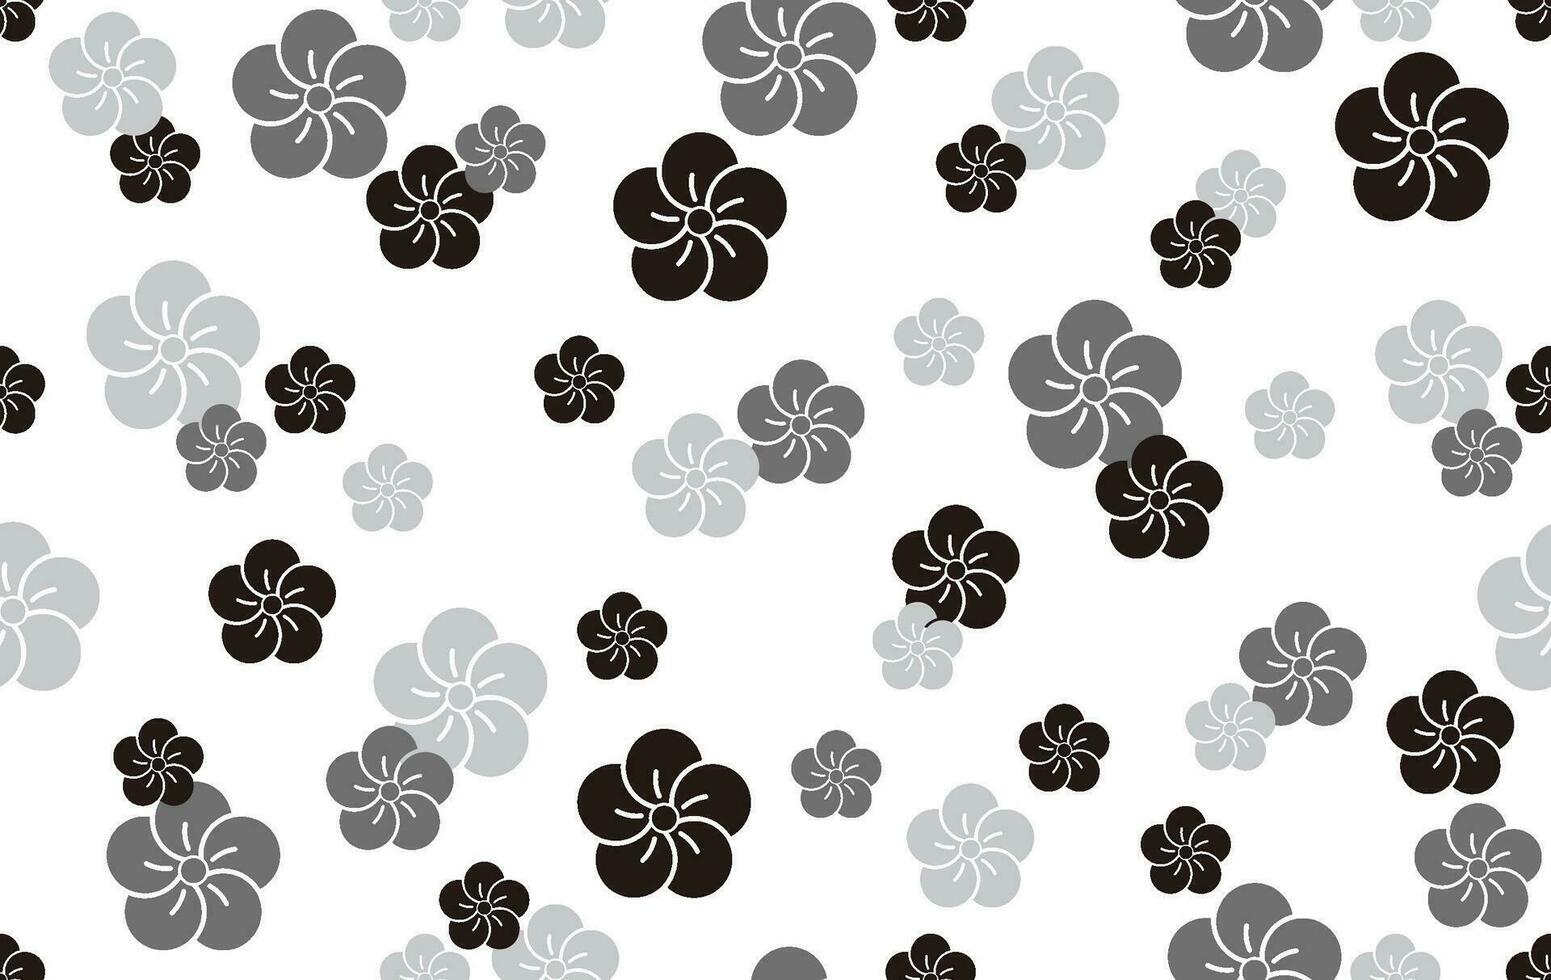 sömlös mönster med japansk årgång plommon blomma symboler, vektor illustration. vågrätt och vertikalt repeterbar.